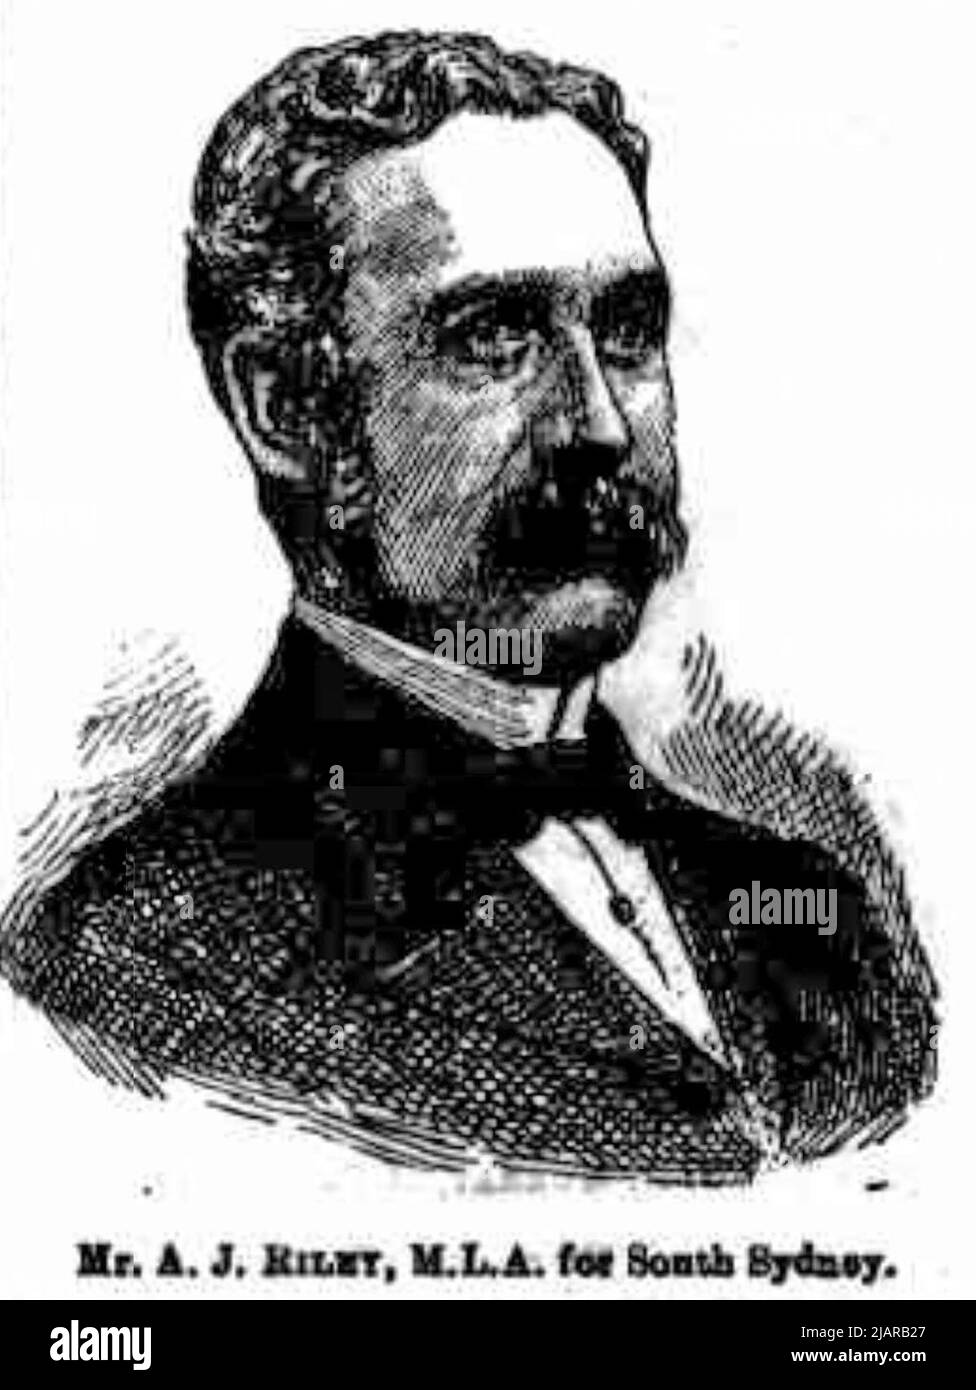 Alban Joseph Riley, nouvellement élu membre de l'Assemblée législative de la Nouvelle-Galles du Sud pour South Sydney, 1887 Banque D'Images